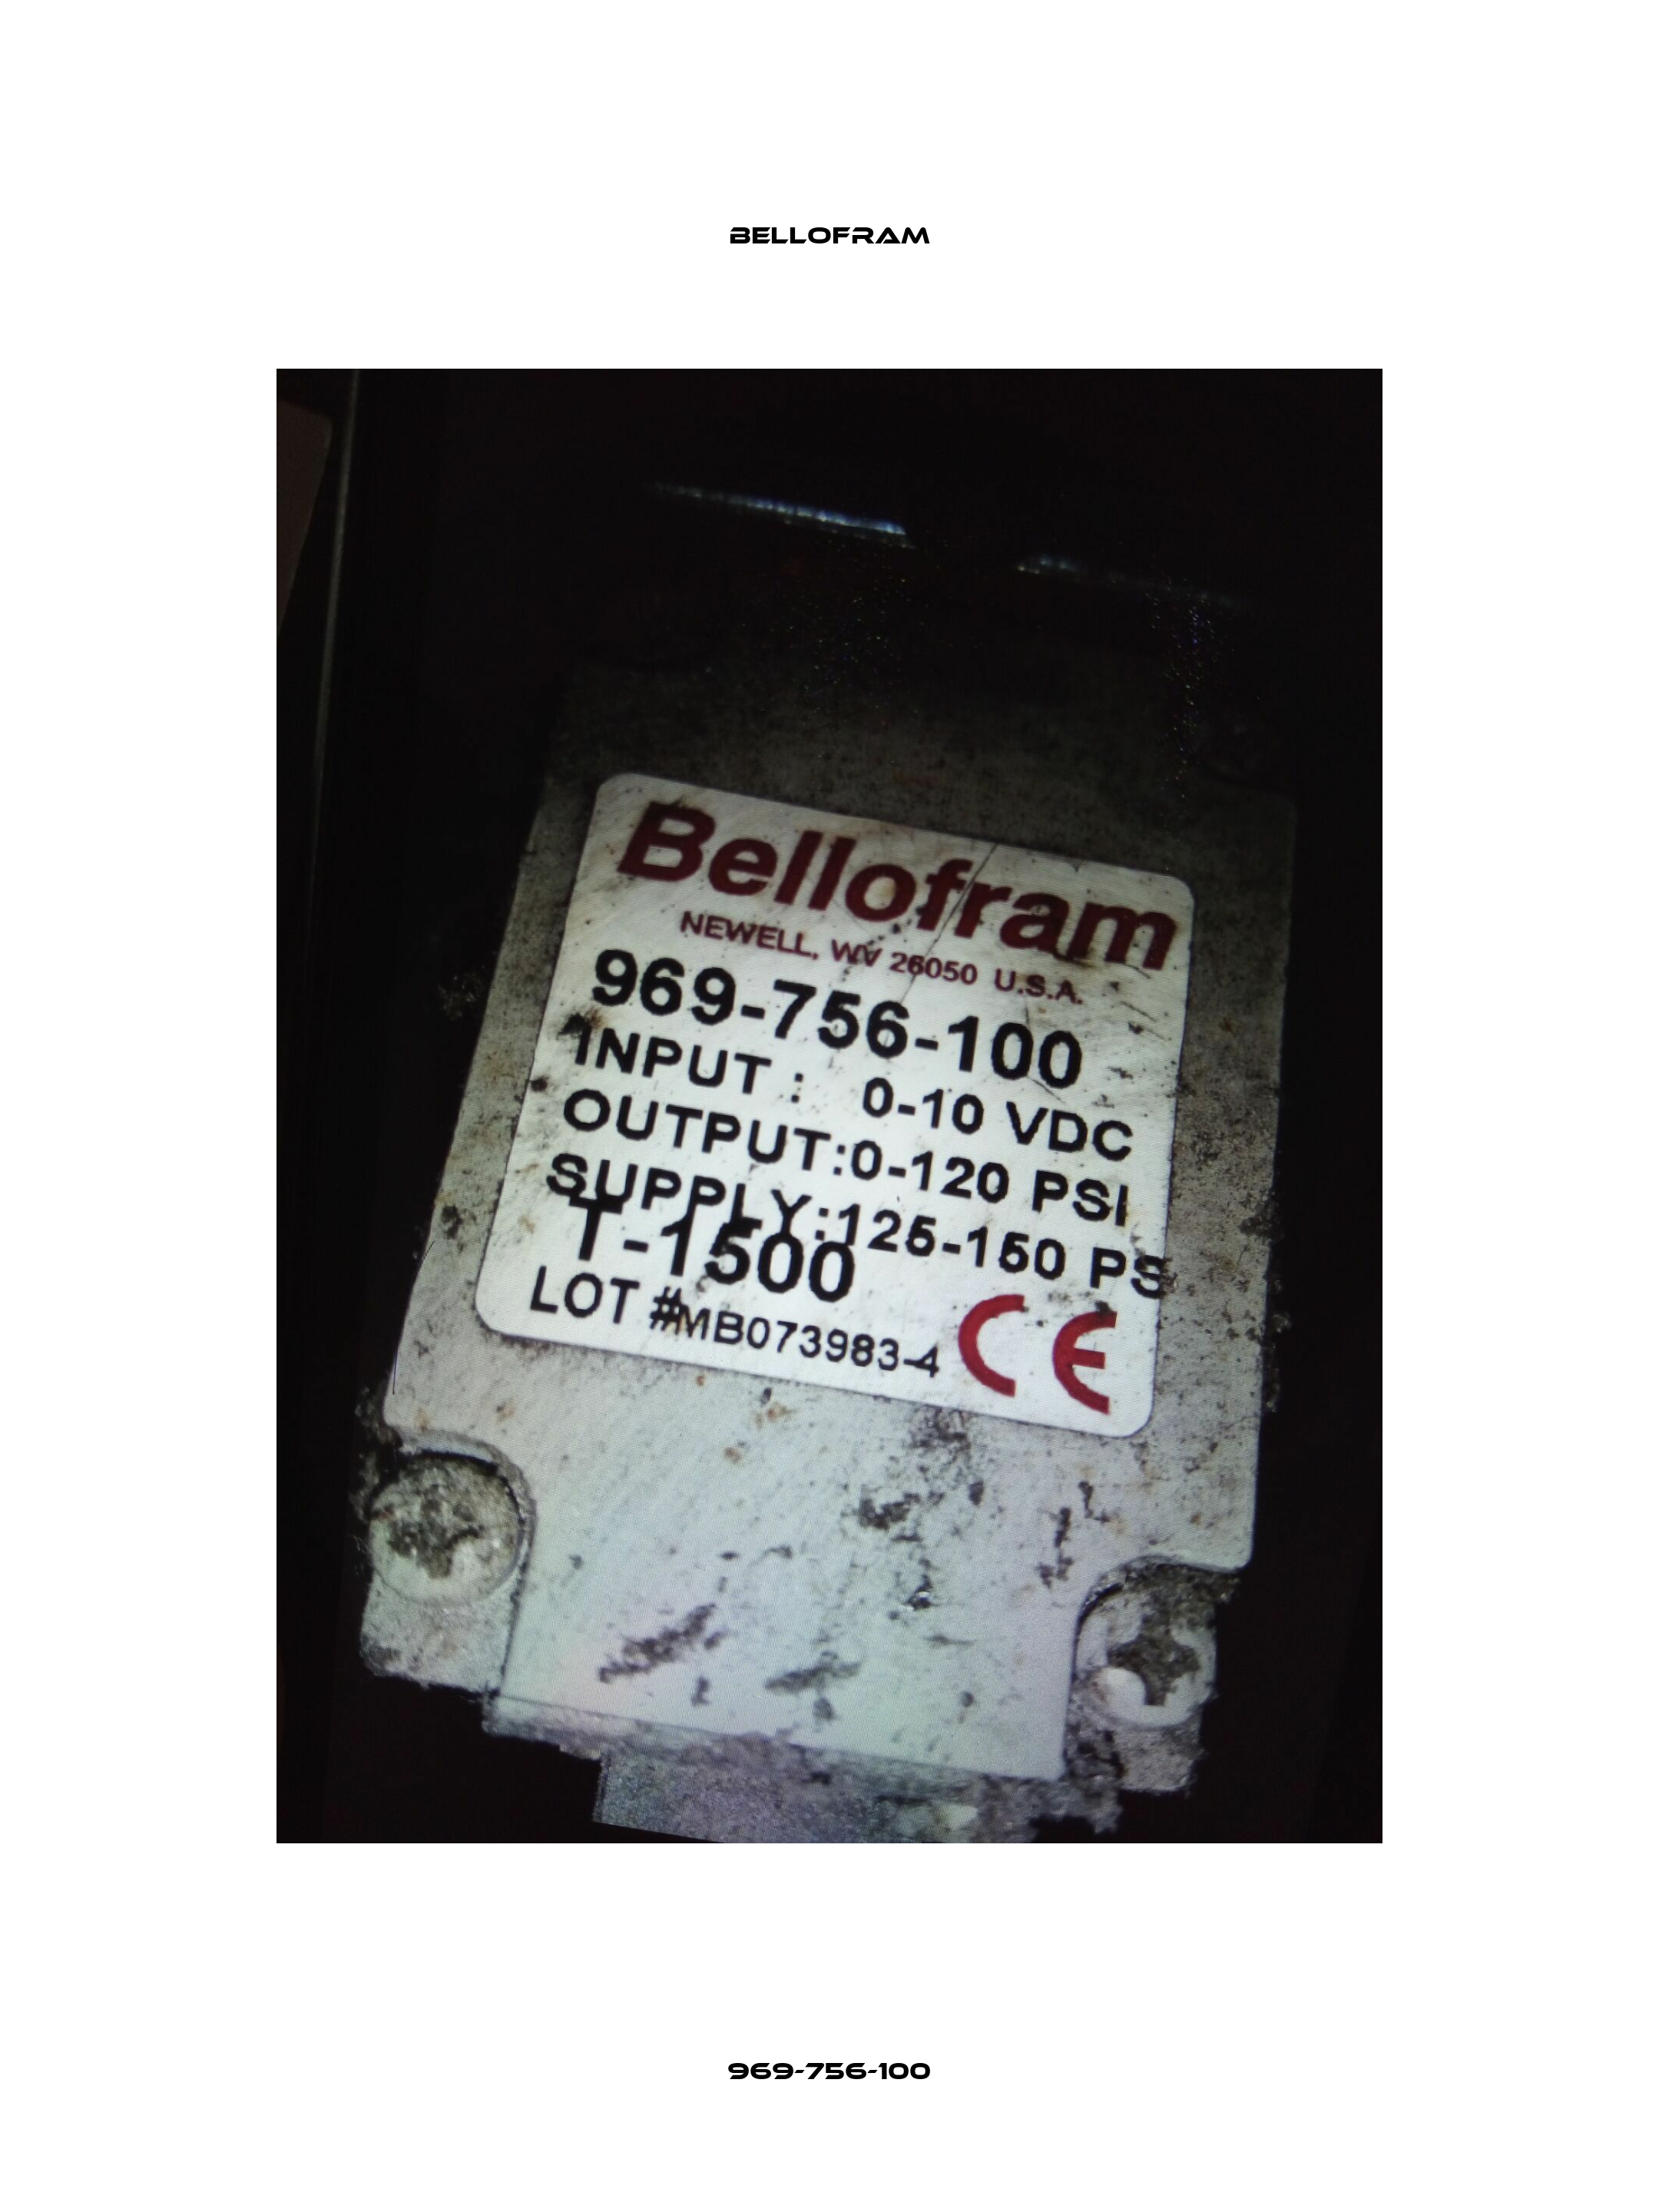 969-756-100 Bellofram